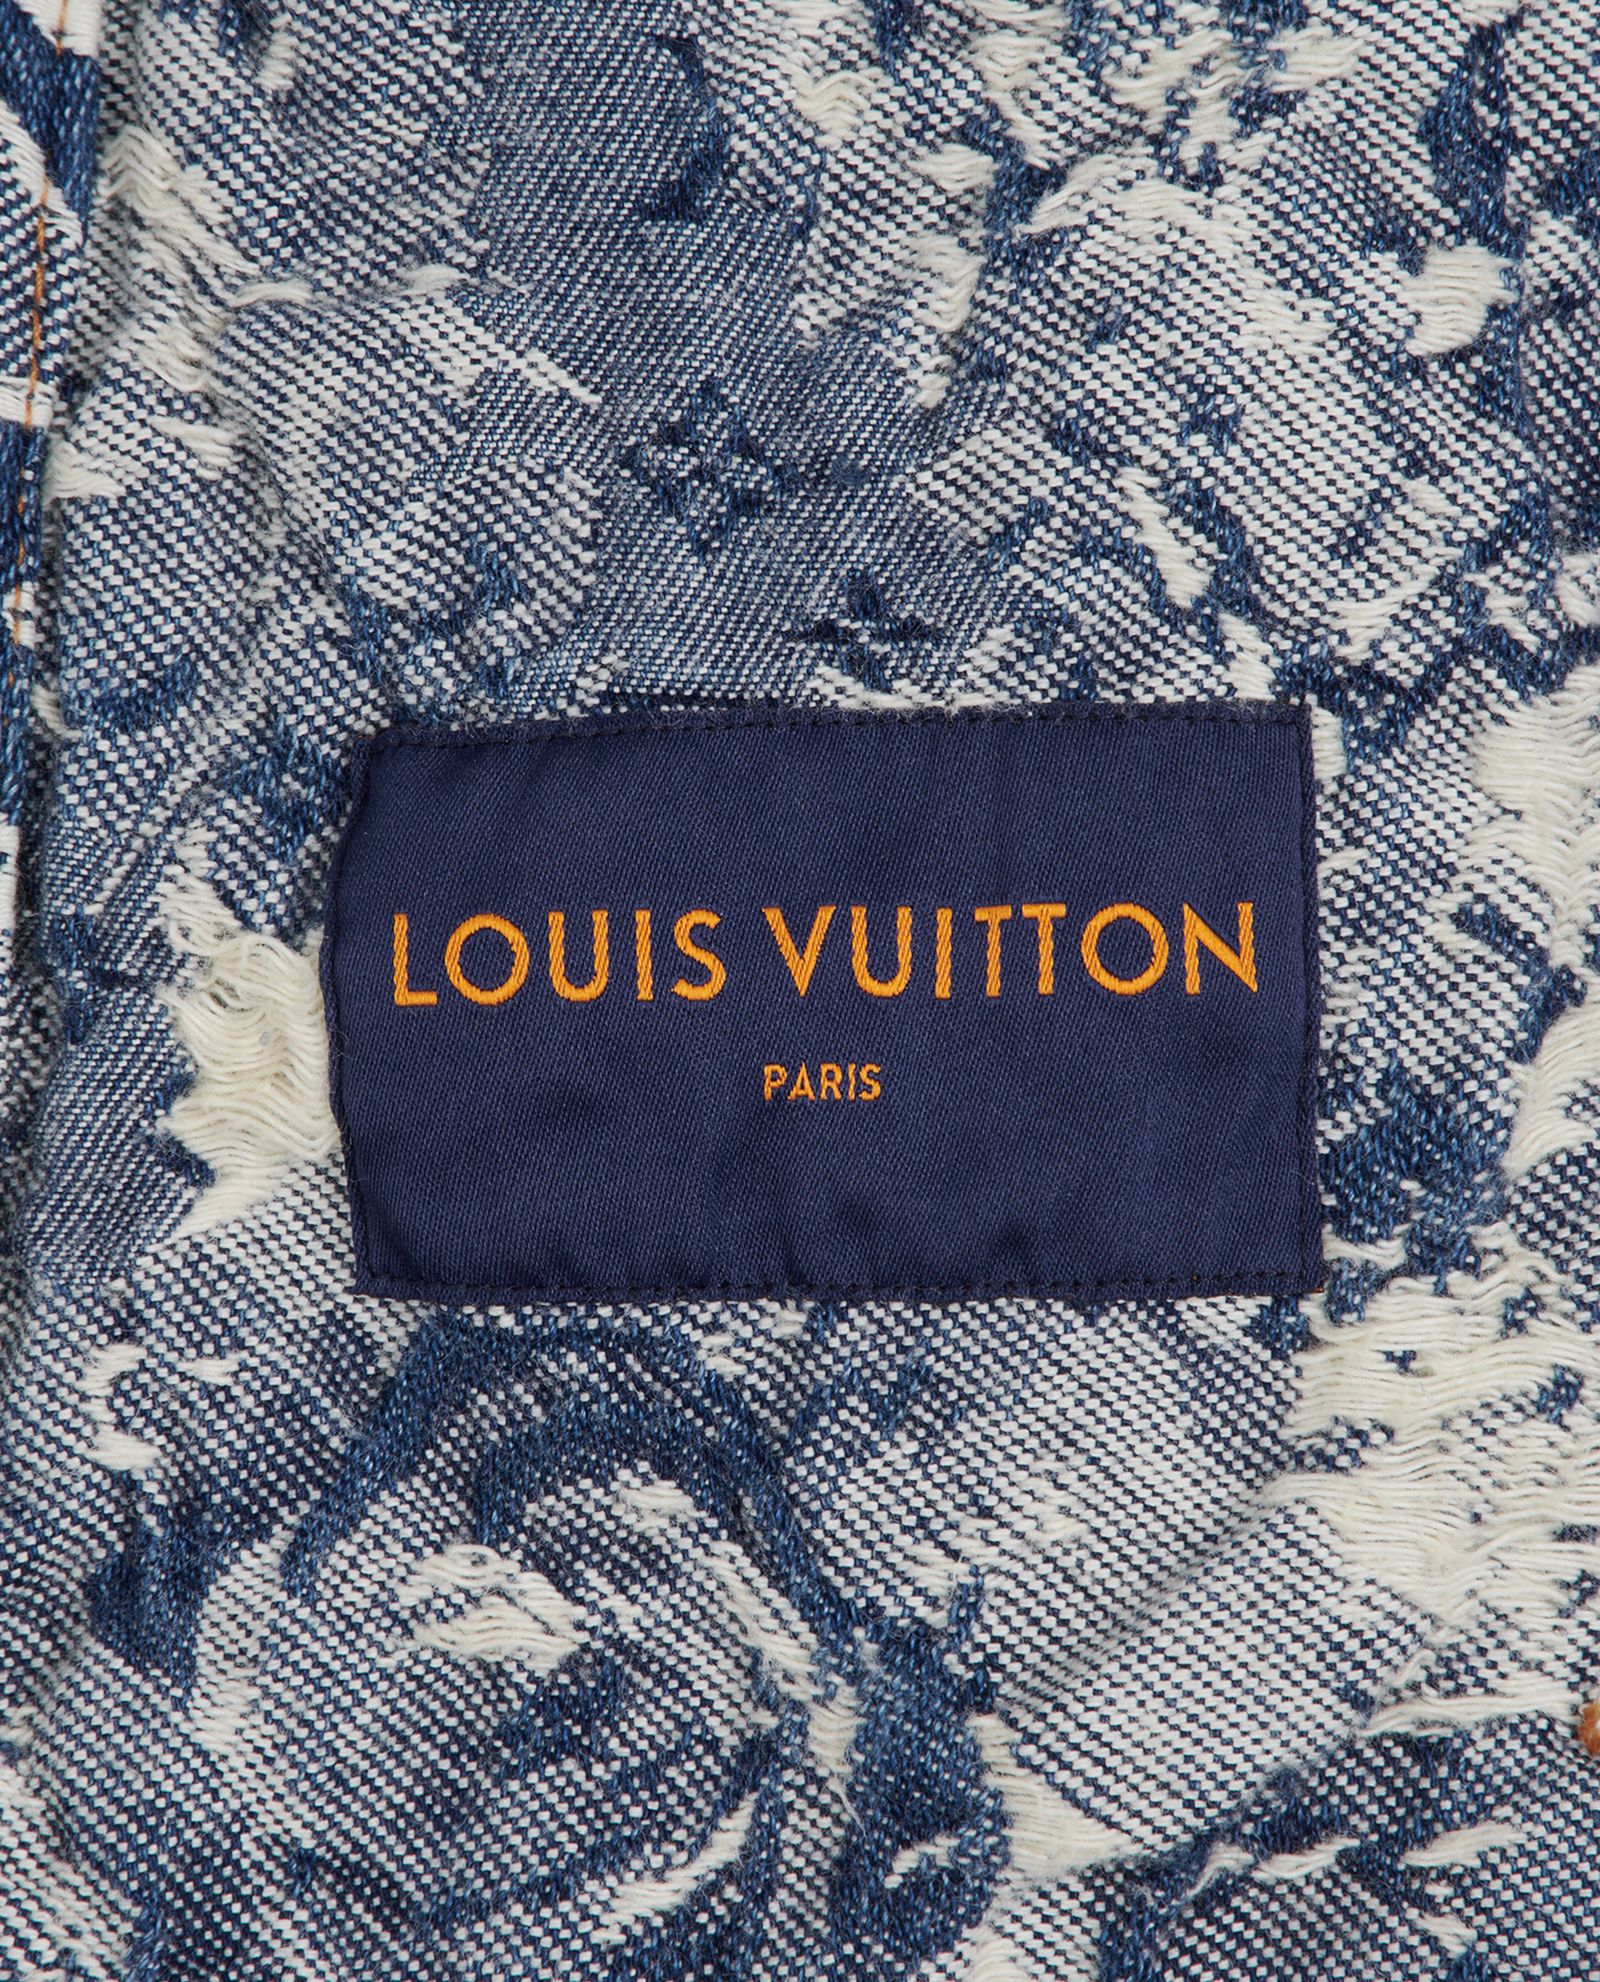 Louis Vuitton Blue Floral Distressed Denim Jacket